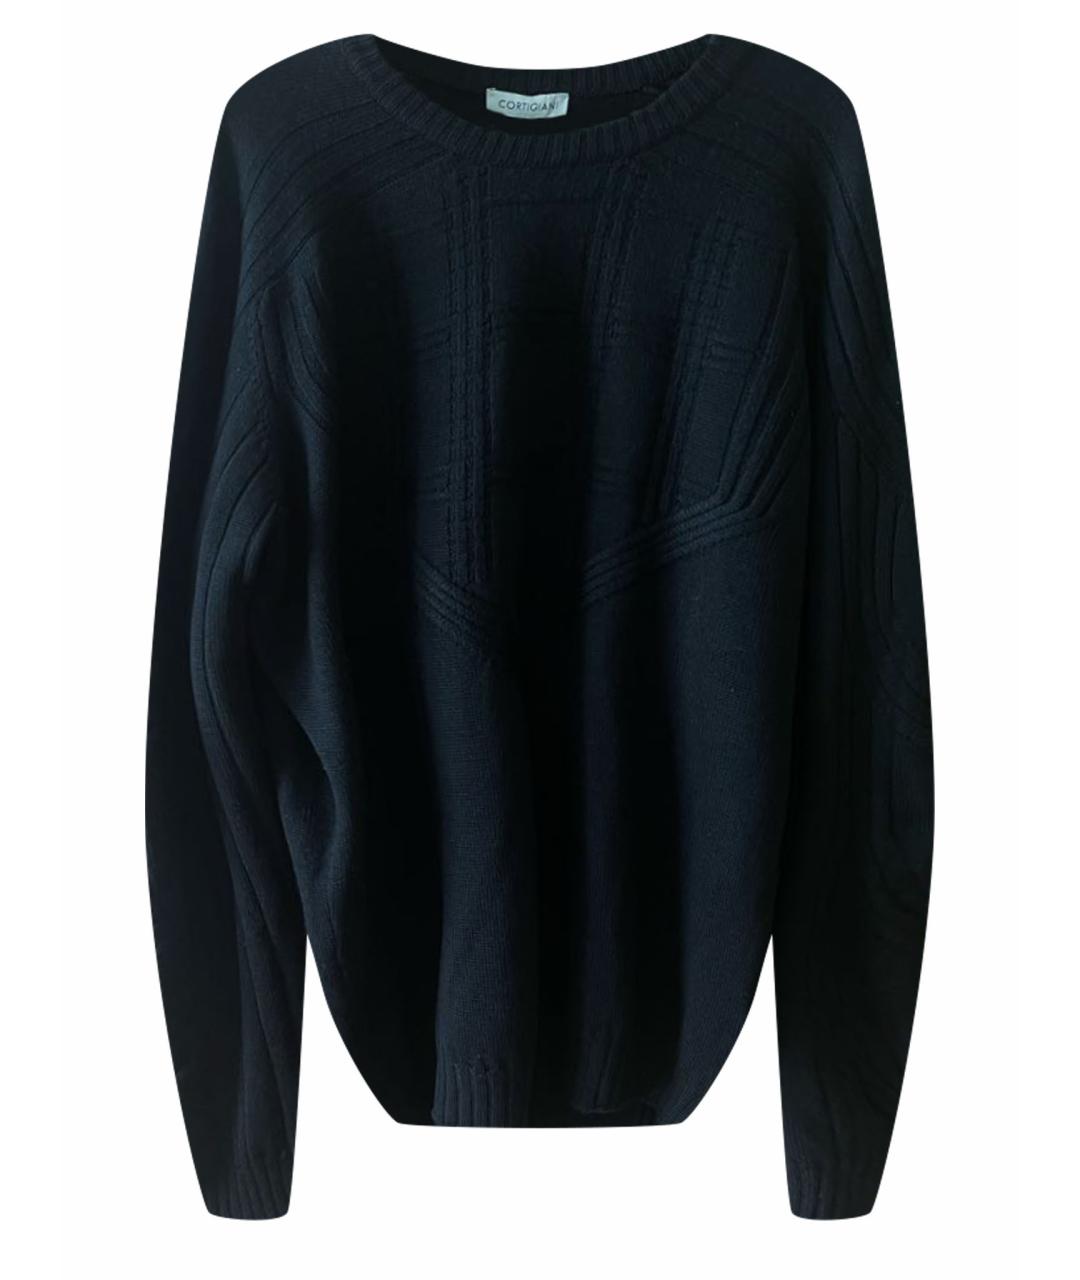 CORTIGIANI Черный шерстяной джемпер / свитер, фото 1